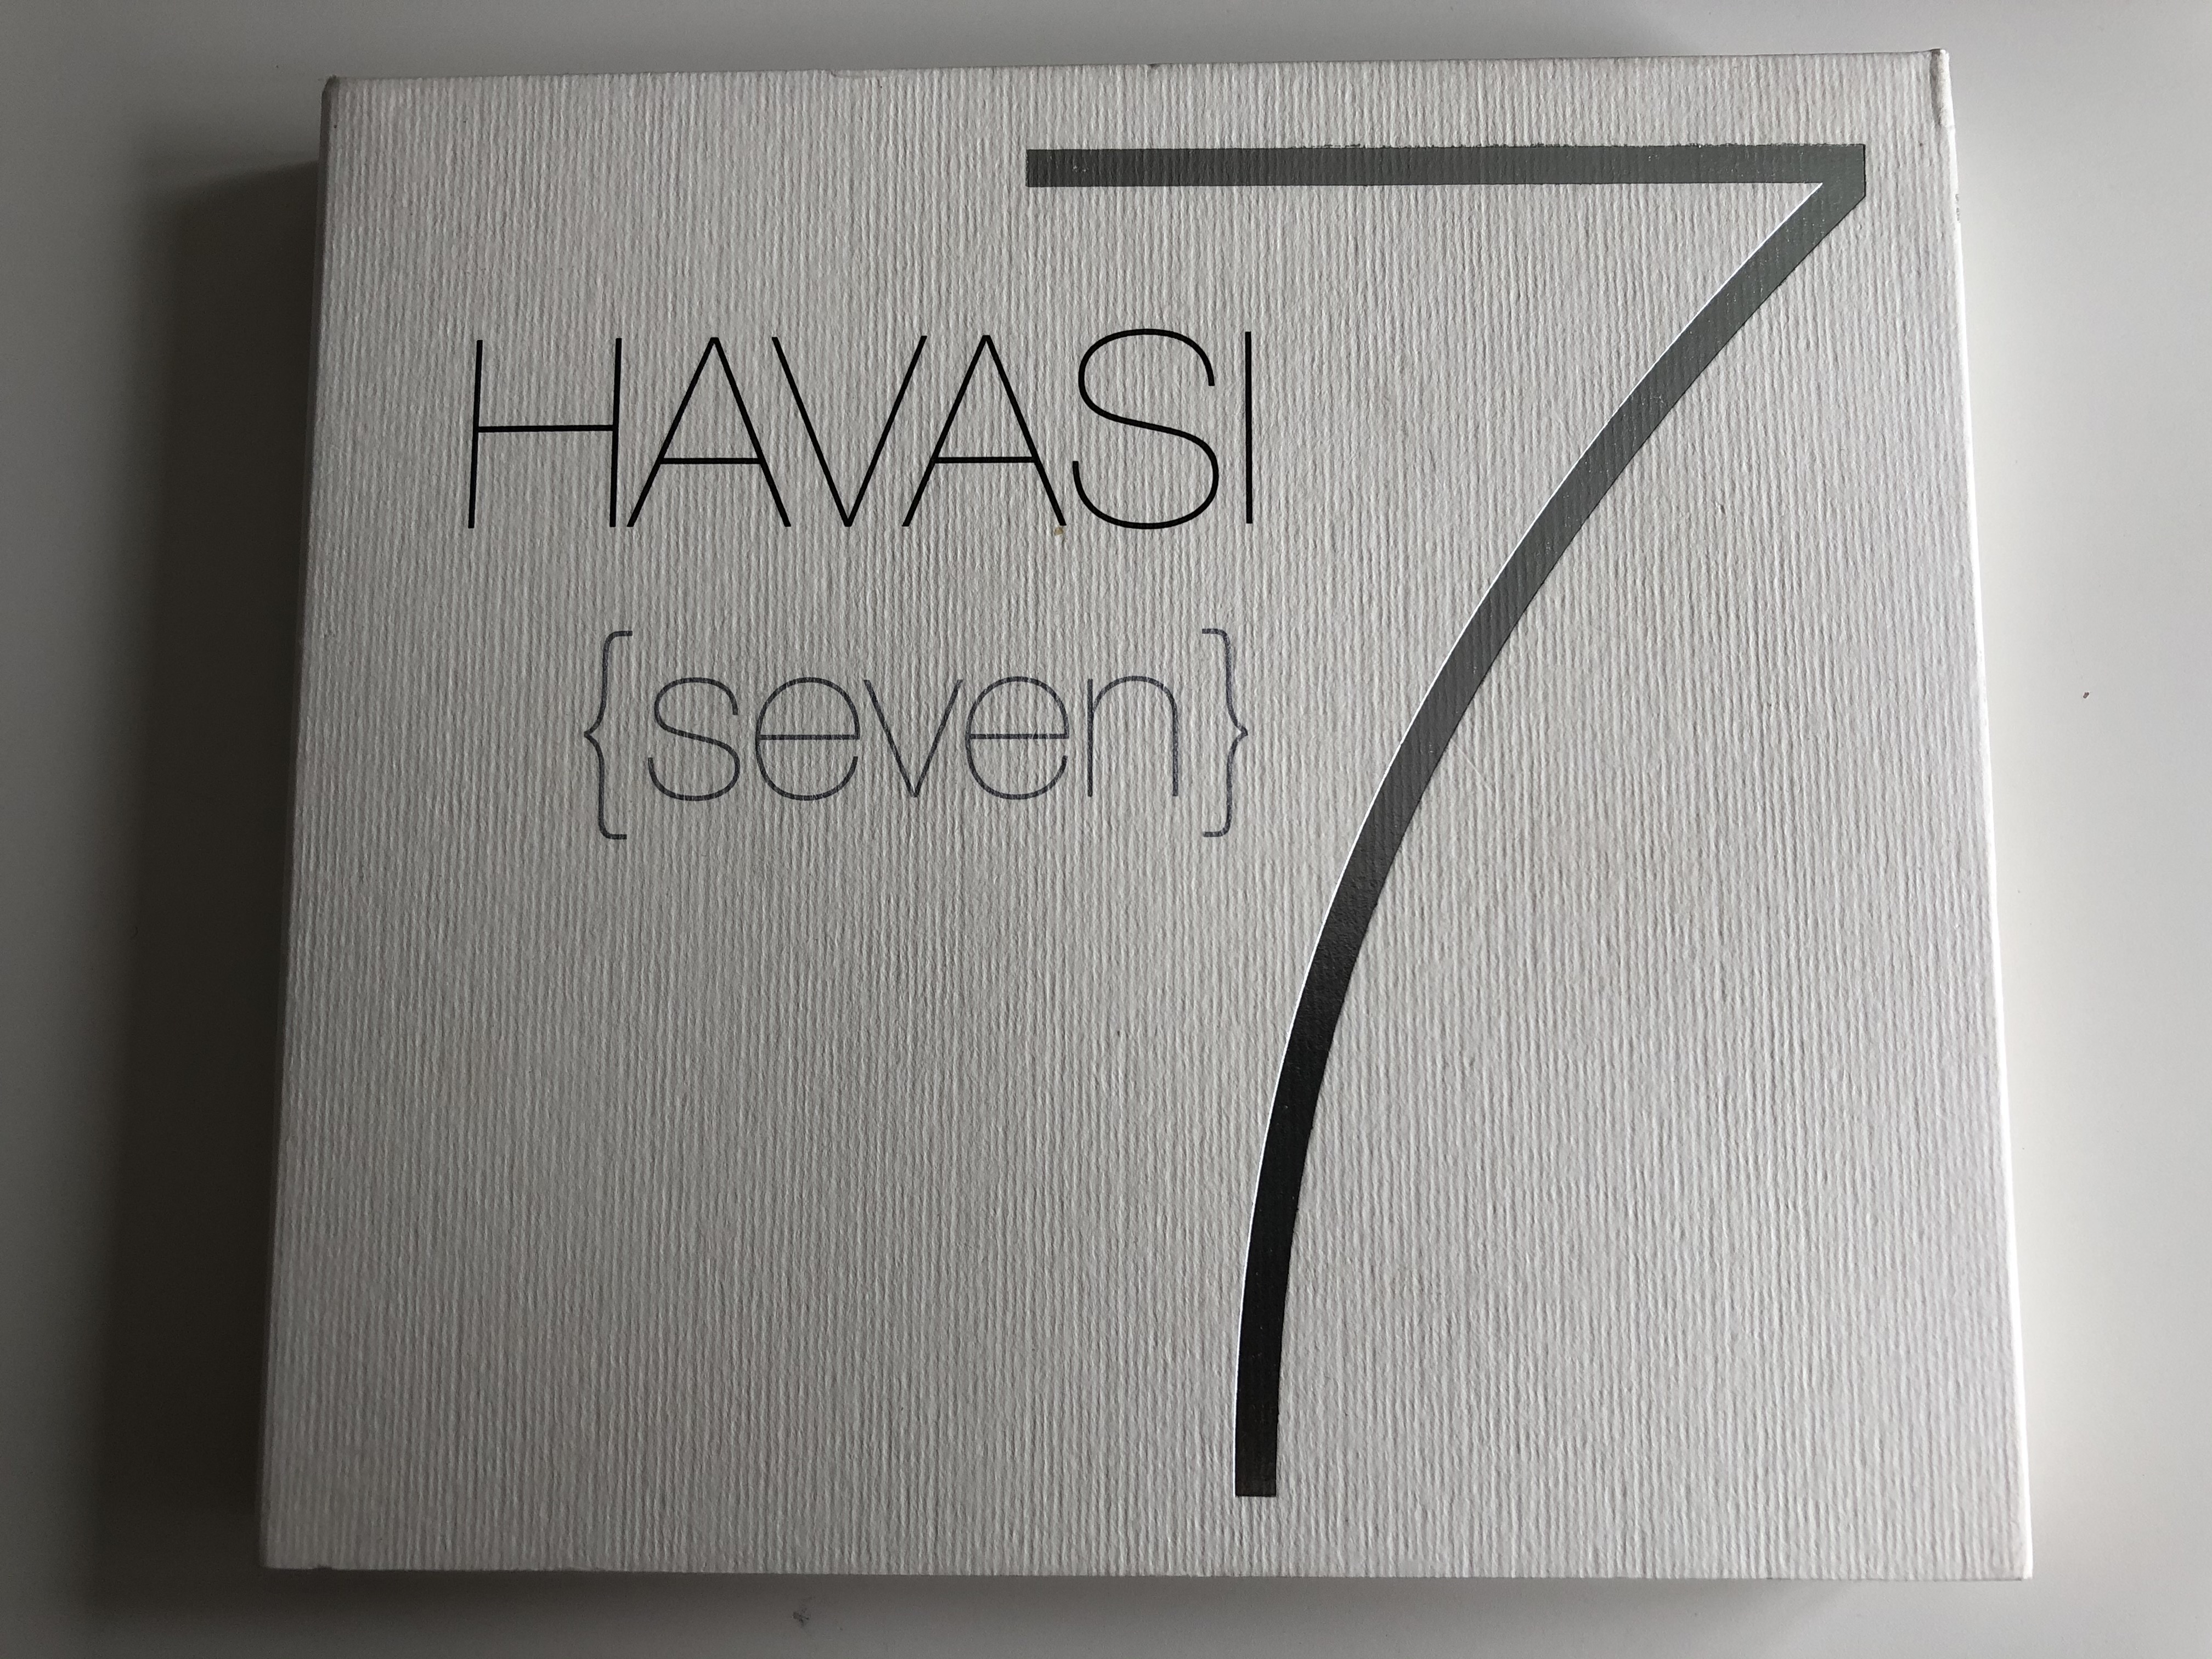 havasi-seven-7-havasi-audio-cd-dvd-2006-0094638338420-1-.jpg